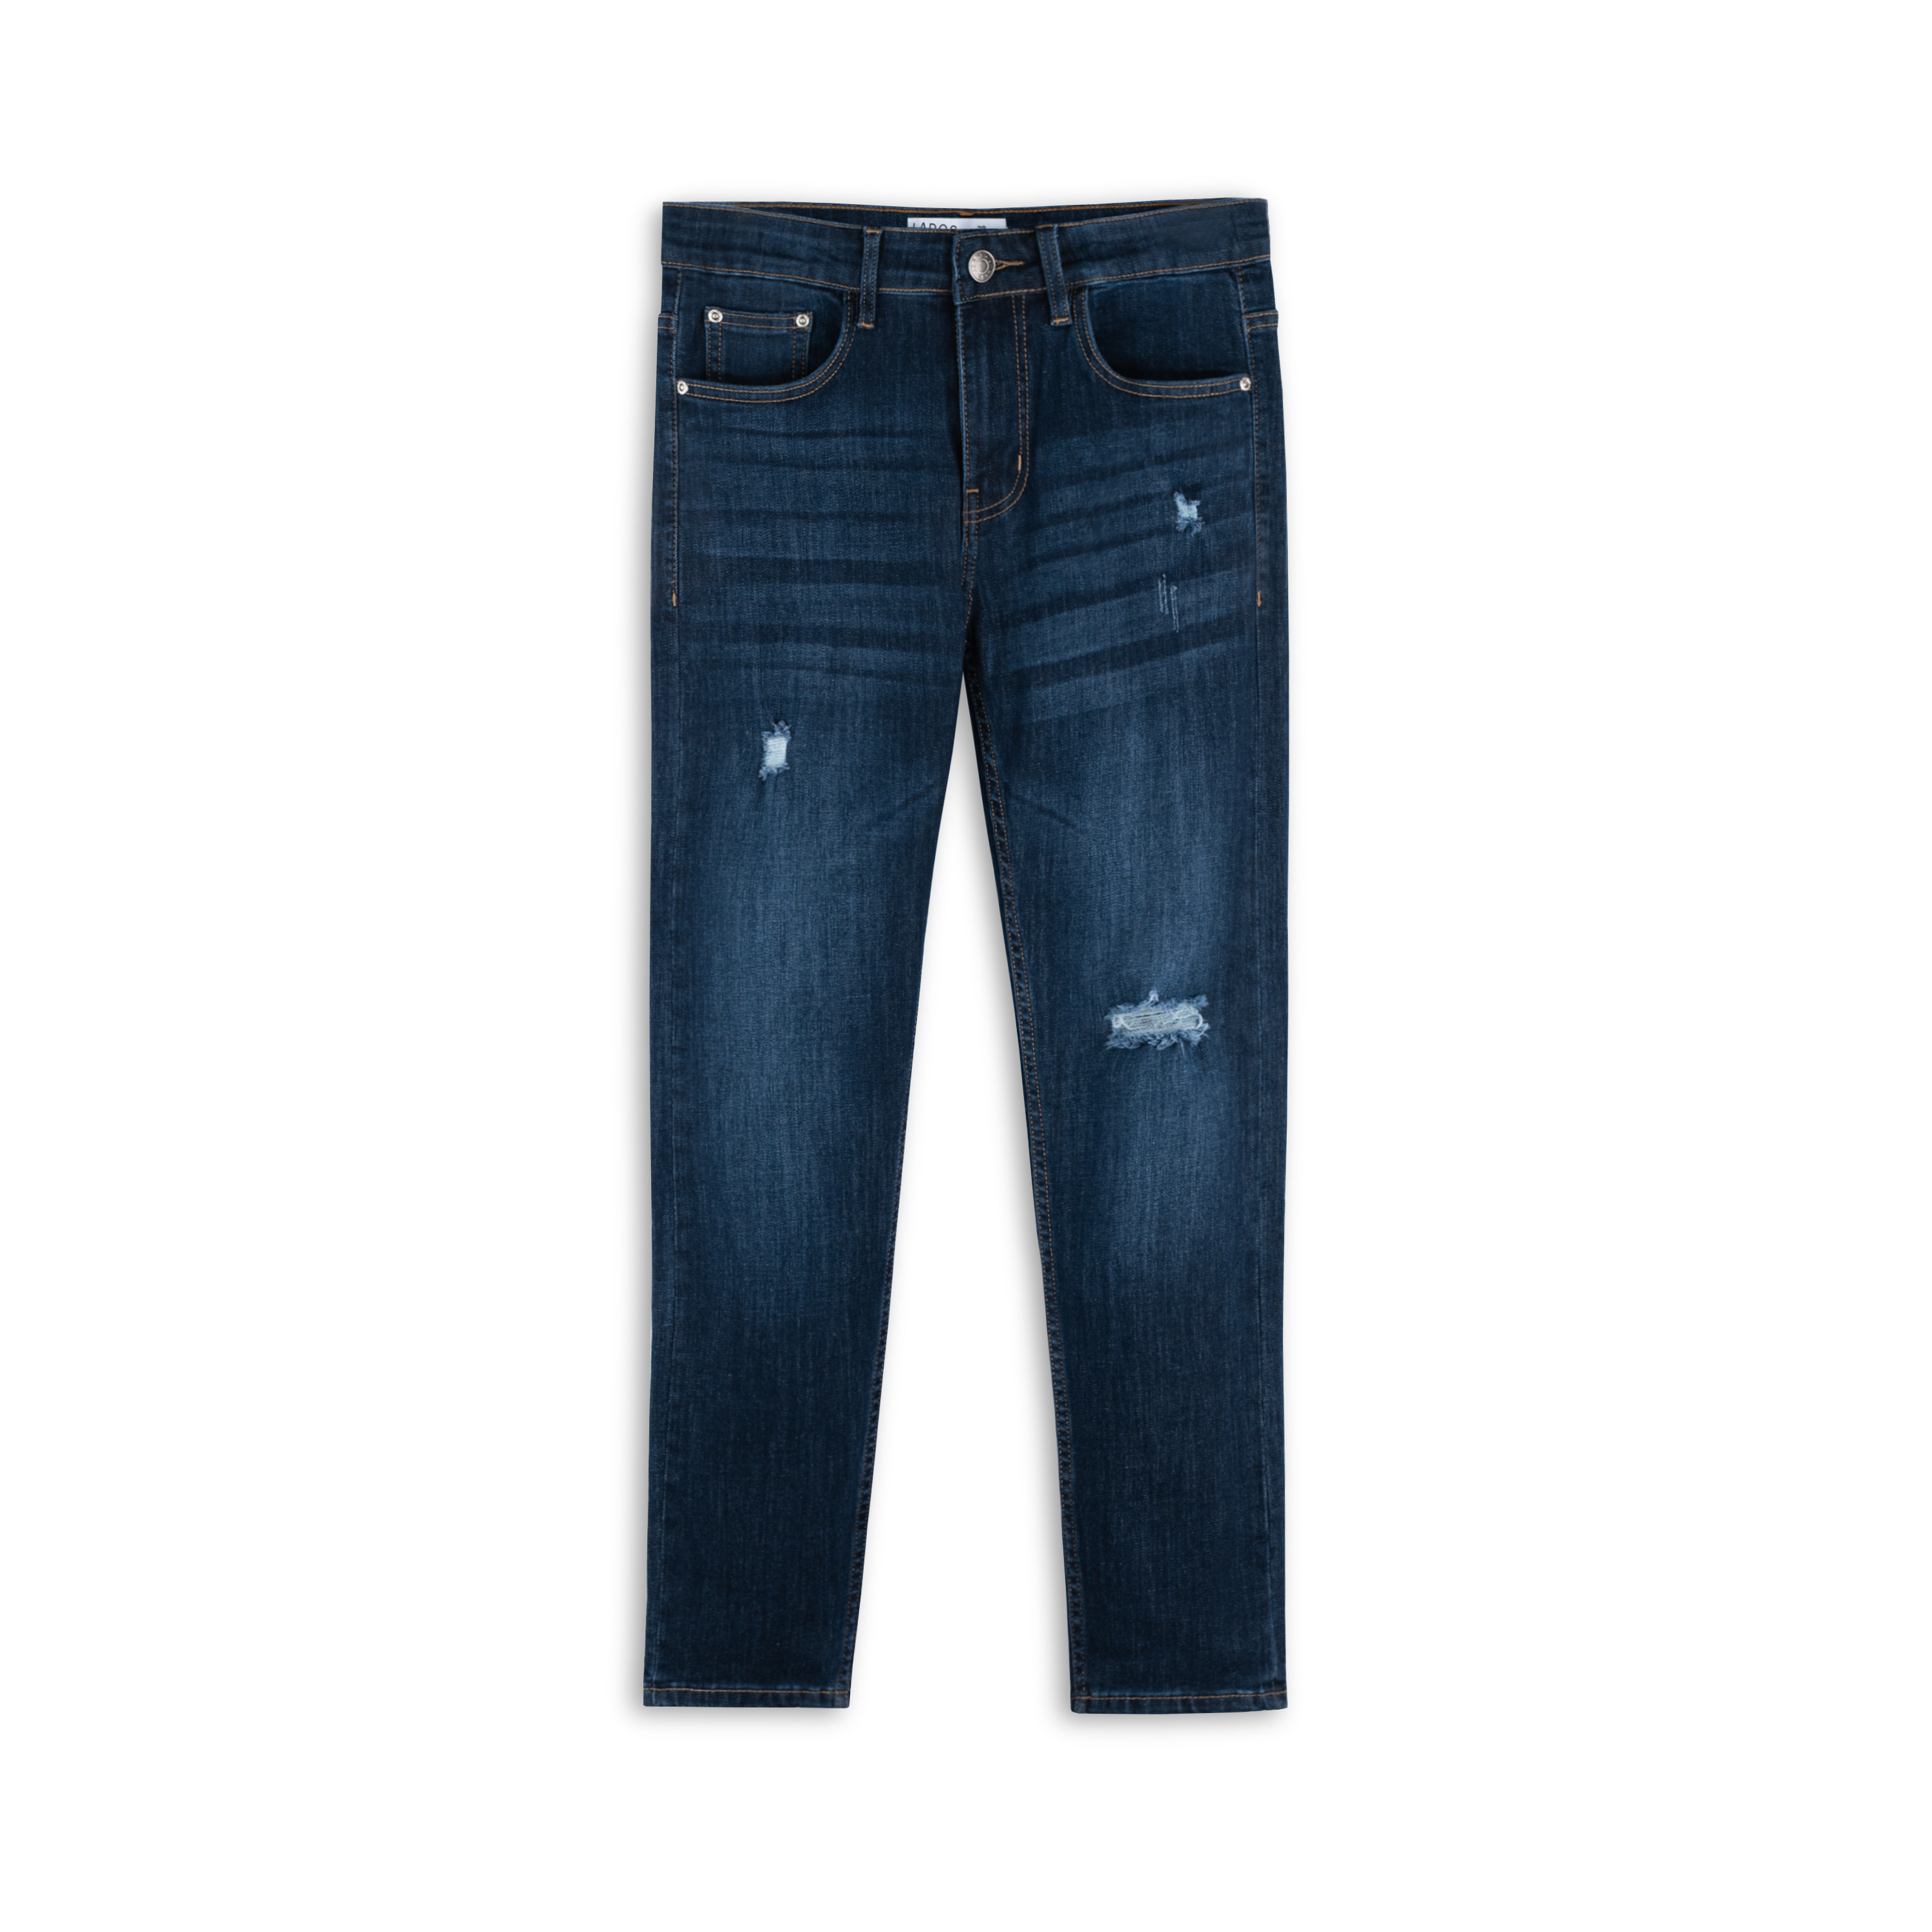 Quần jean nam dài smart jeans rách cao cấp LADOS-4097 siêu co giãn